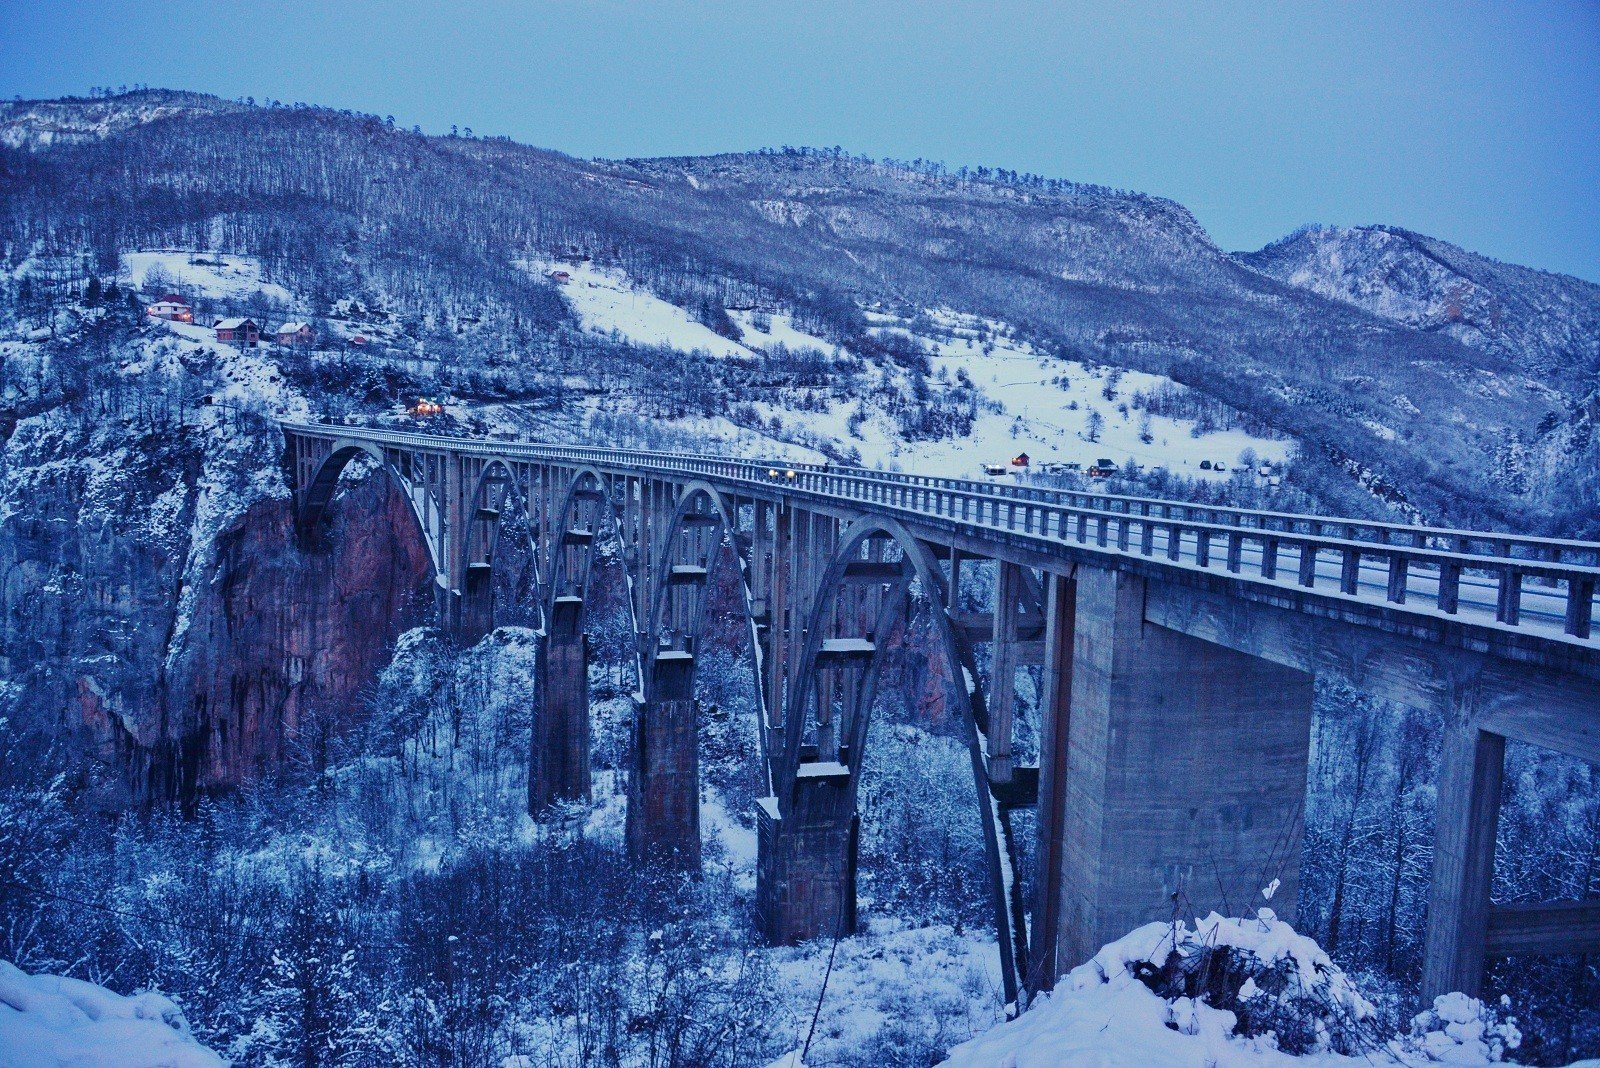 Википедия: Мост Джурджевича через реку Тара был спроектирован Mijat Trojanović и построен между 1937 и 1940 годами в королевстве Югославия. Главный инженер проекта - Исаак Руссо. 365 метровый (1,198 футов) в длину мост имеет пять арок; самый большой пролет составляет 116 метров (381 футов). Высота моста 172 метра (564 фута) над рекой Тара. На момент окончания строительства он был самым большим автомобильным бетонным арочным мостом в Европе.